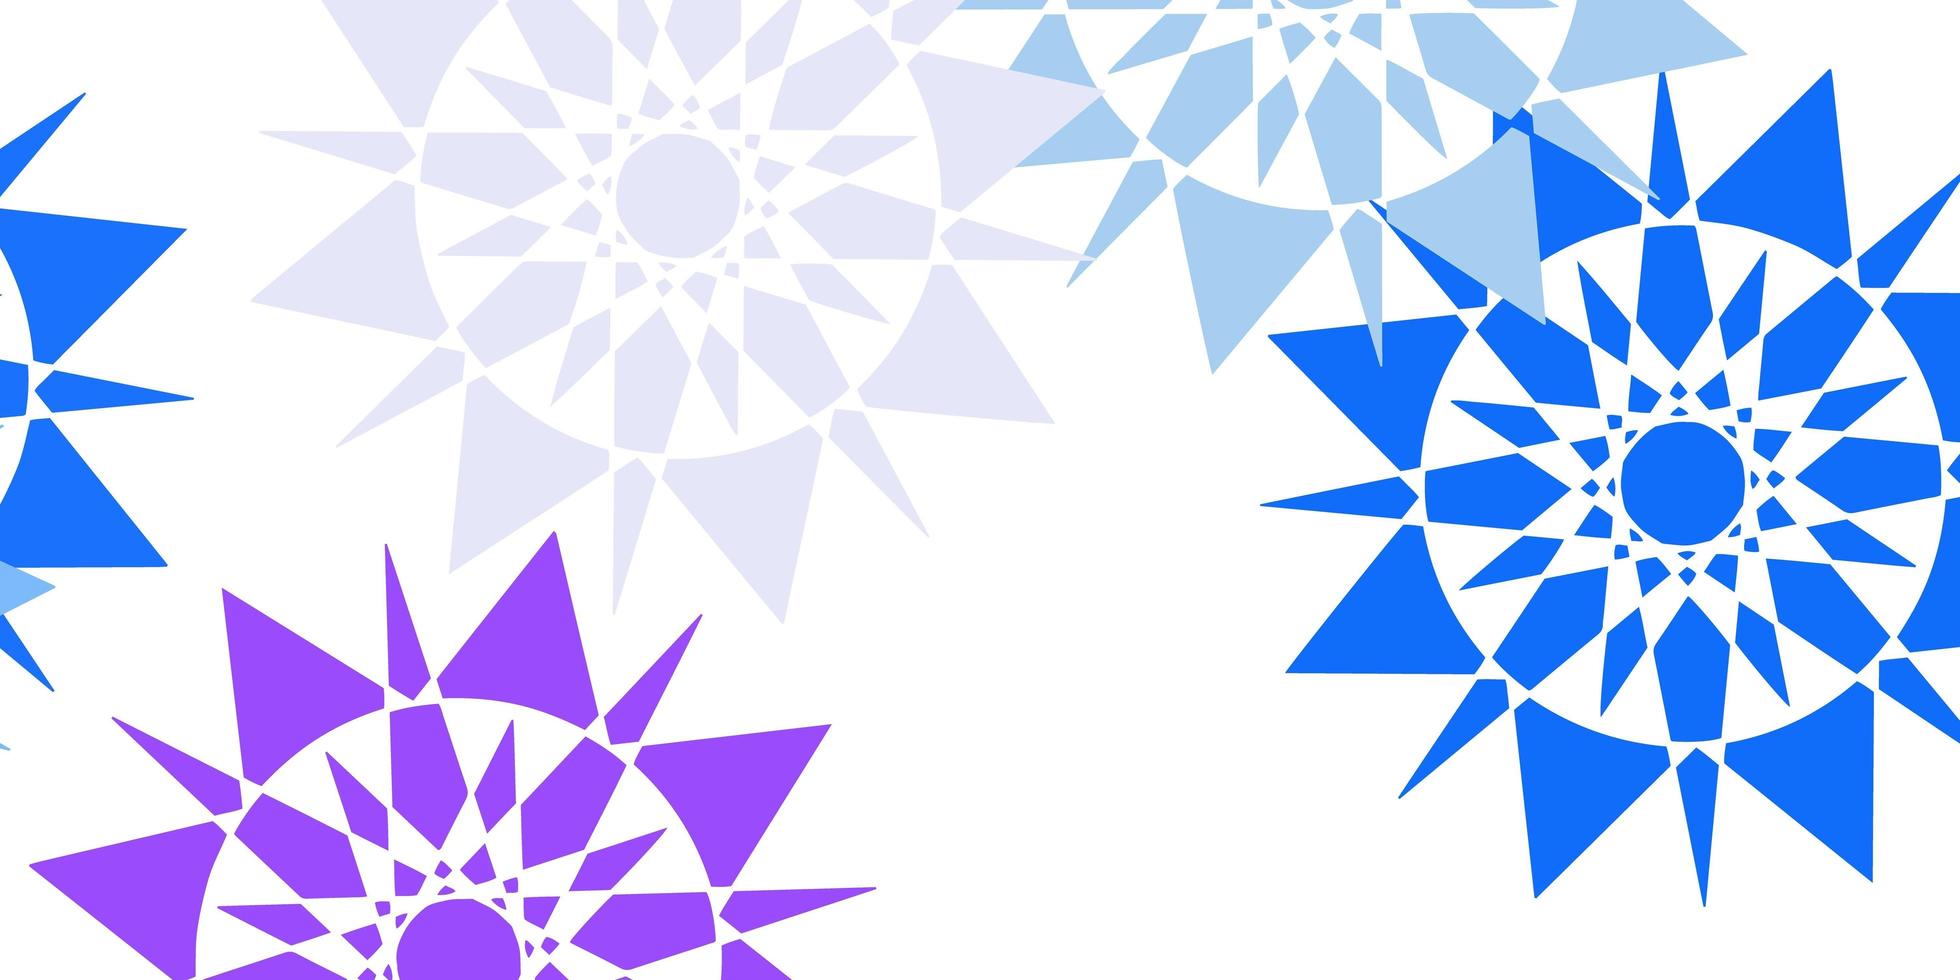 ljusrosa, blå vektormönster med färgade snöflingor. vektor